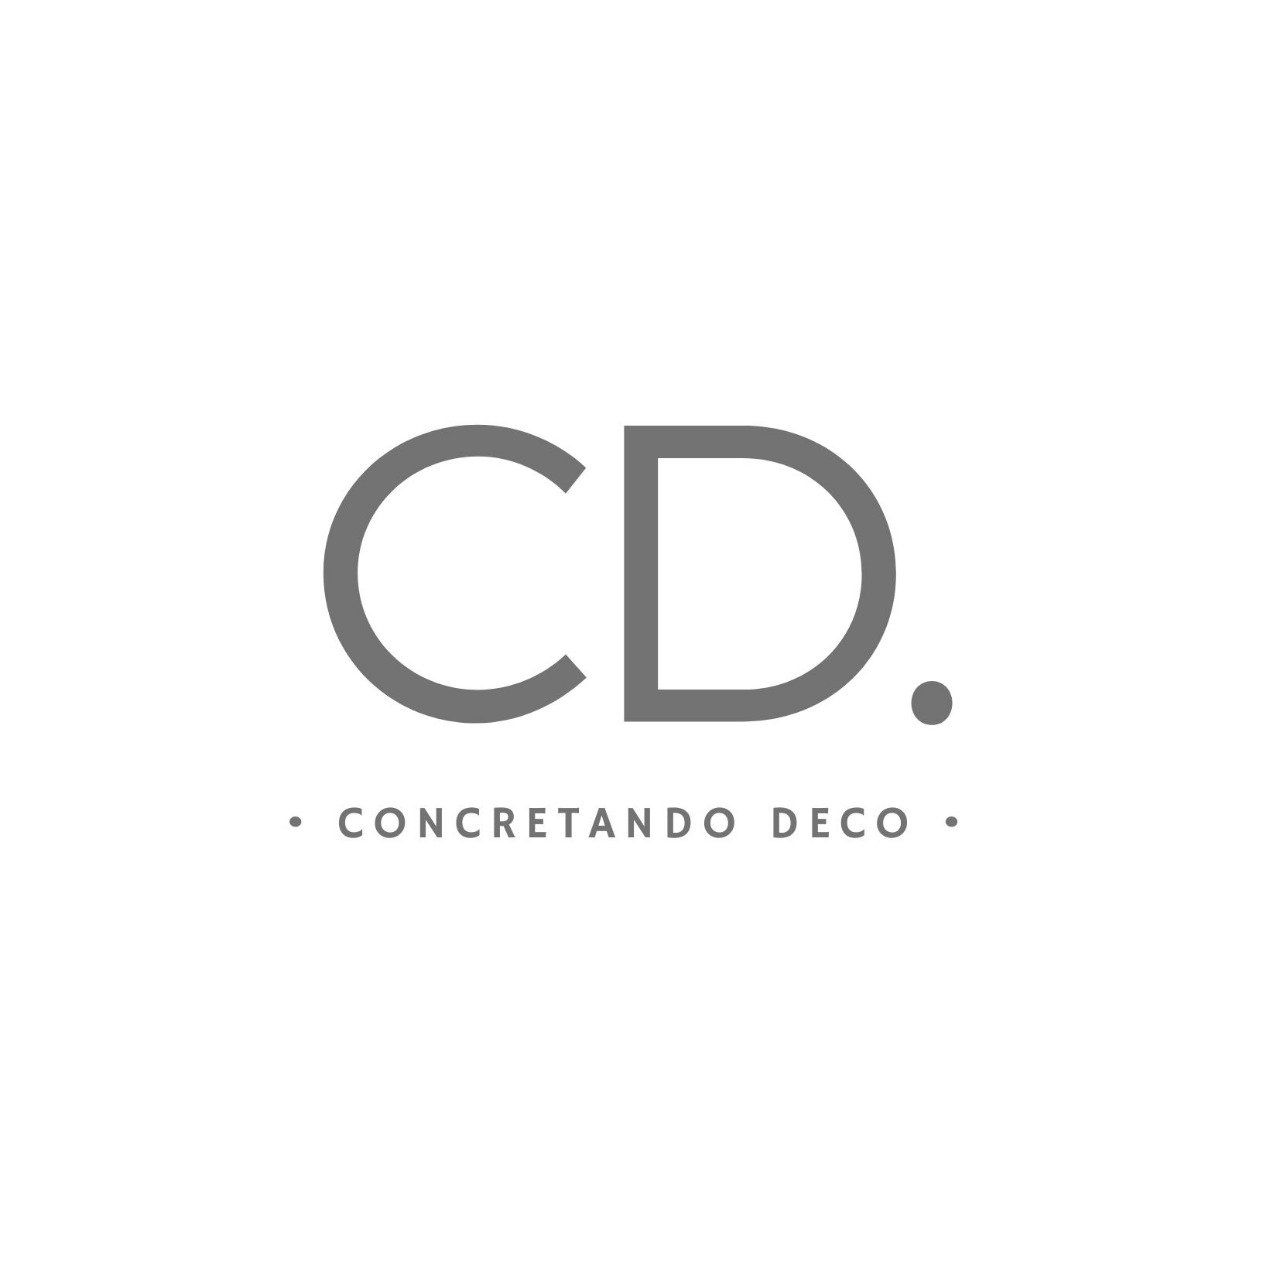 Concretando Deco Logo Sold in AG Outdoor Design 2